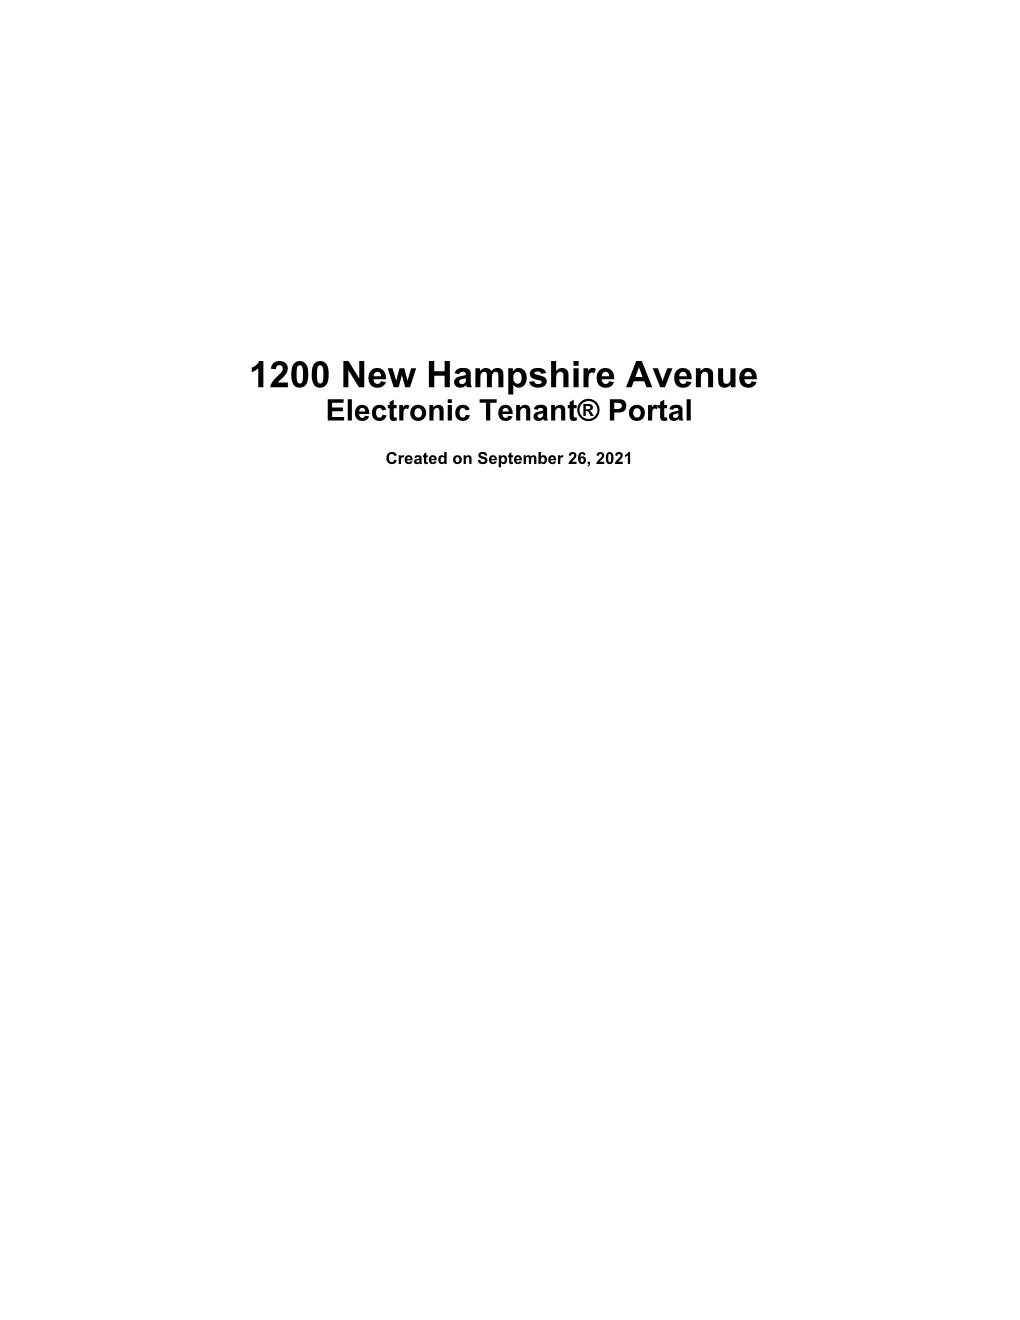 1200 New Hampshire Avenue's Tenant® Portal